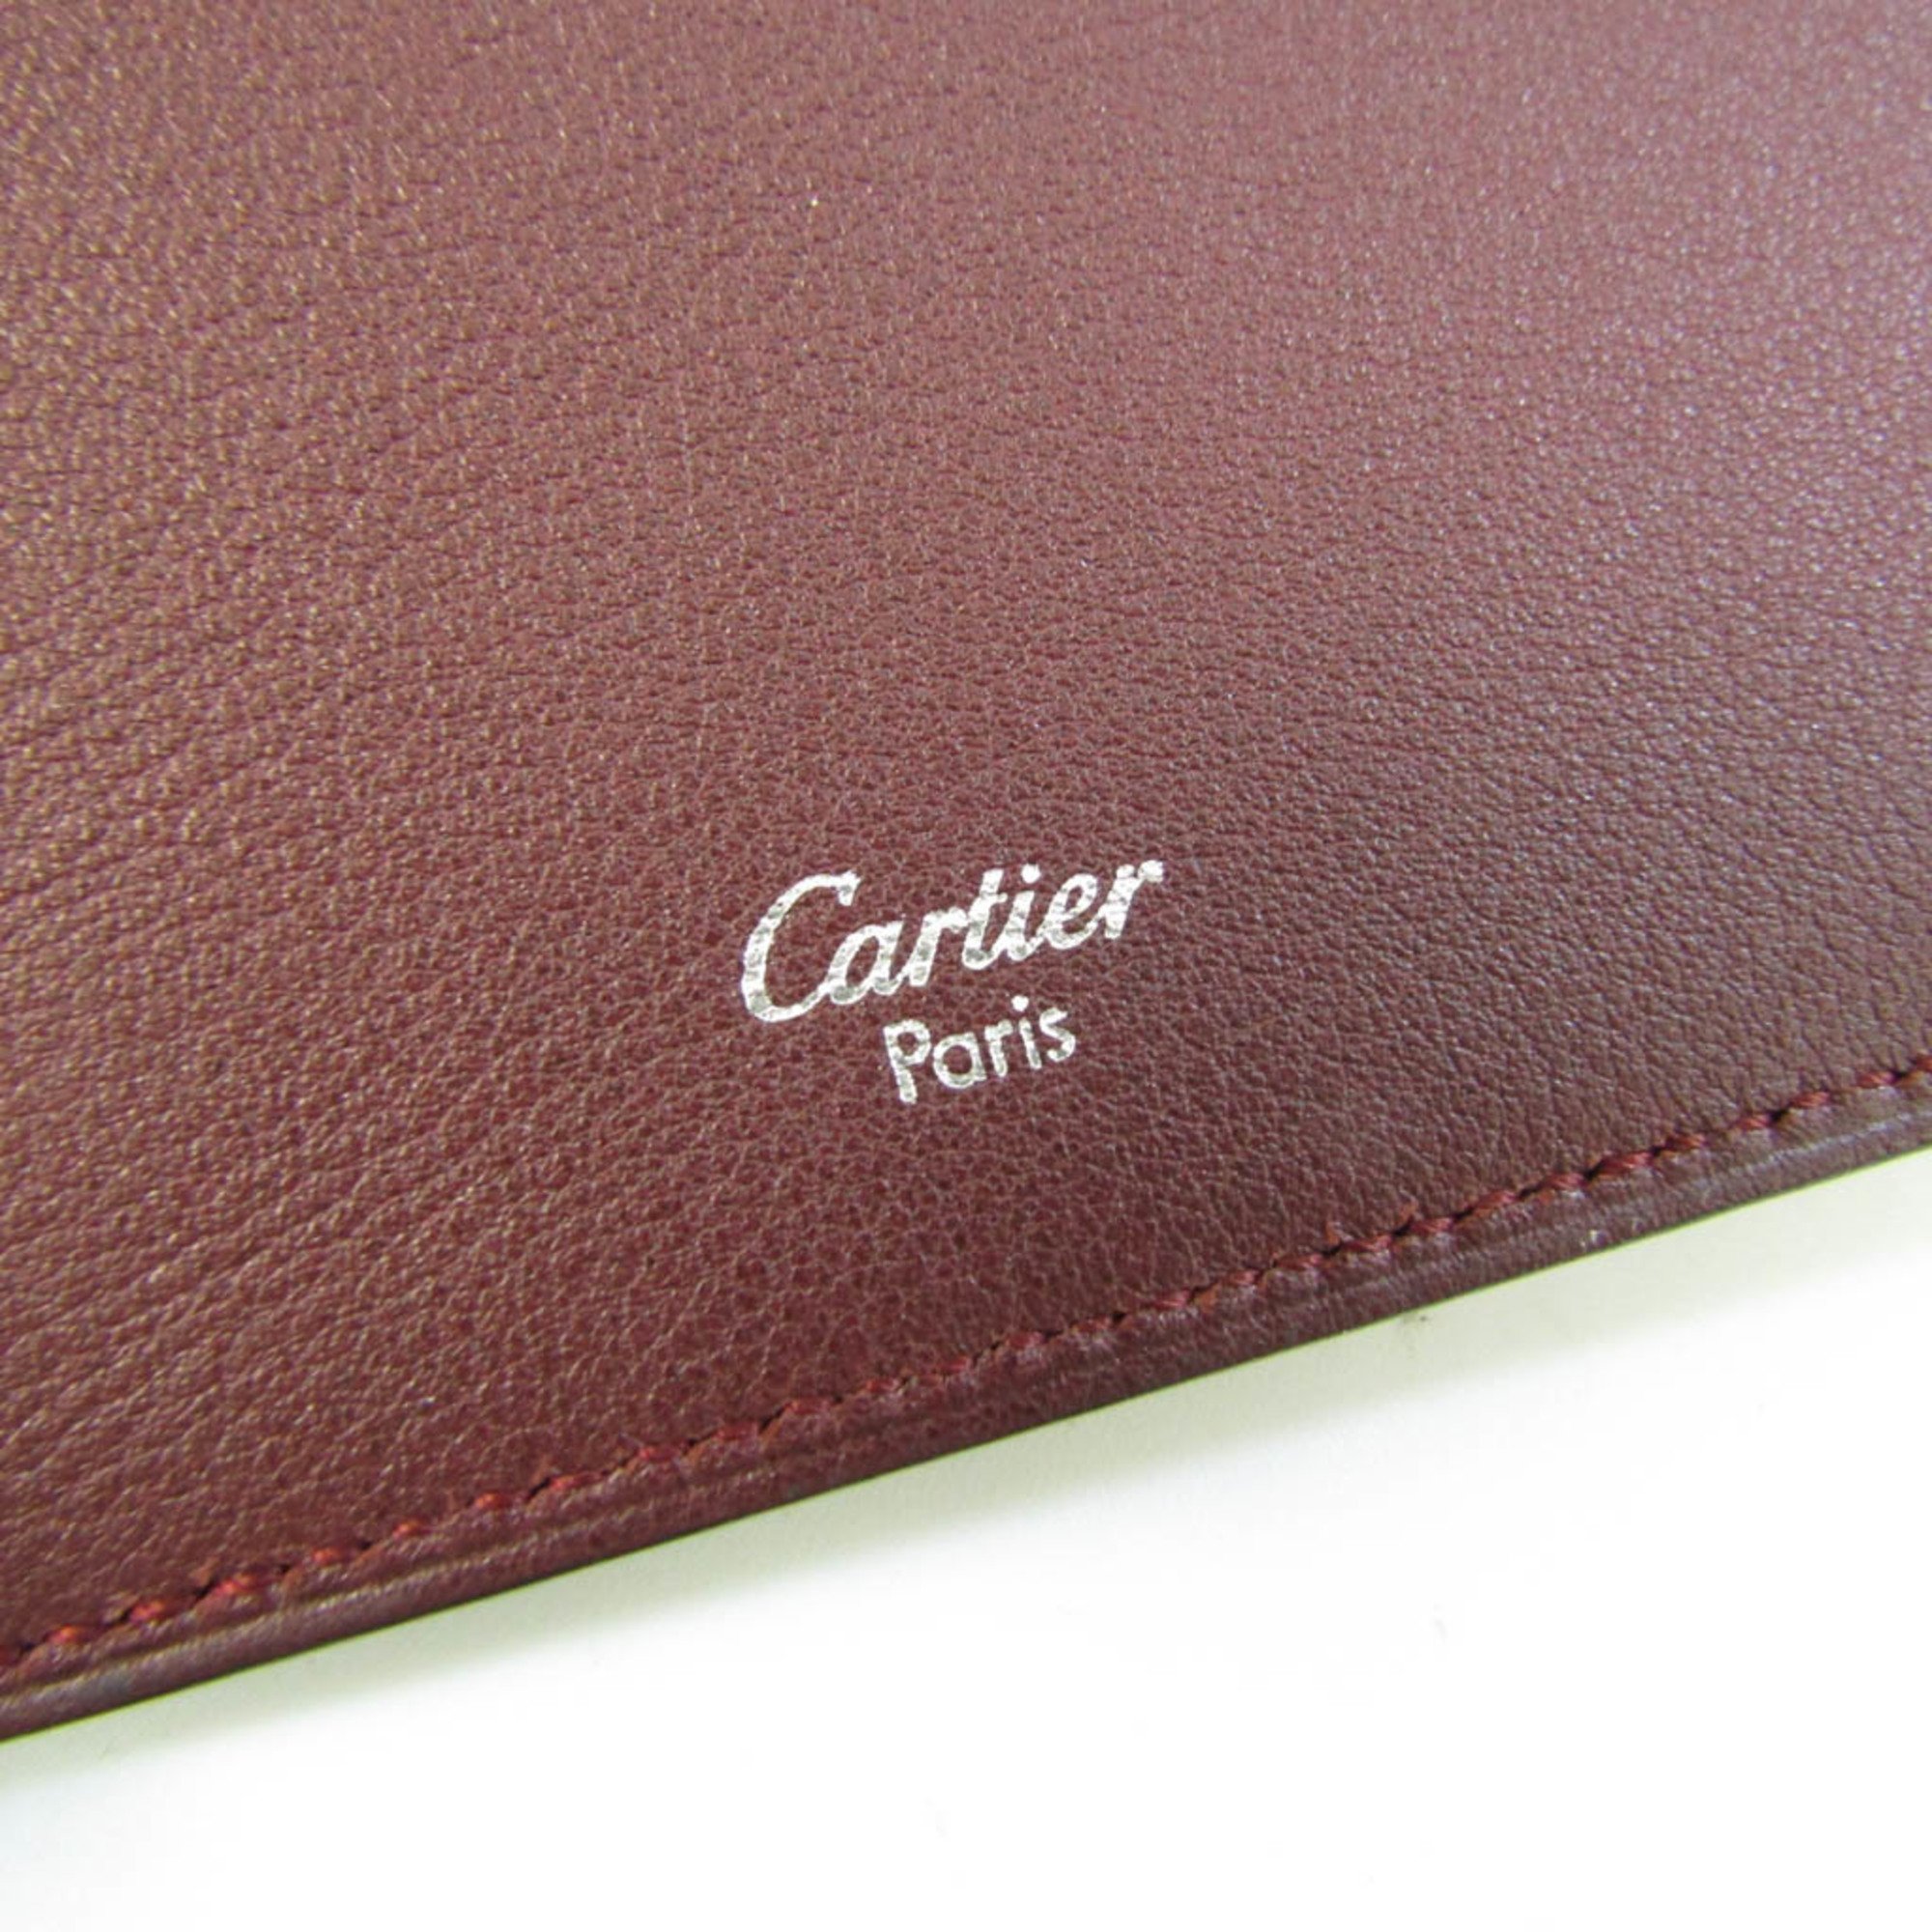 Cartier Cabochon De Cartier L3000593 Leather Card Case Black,Bordeaux